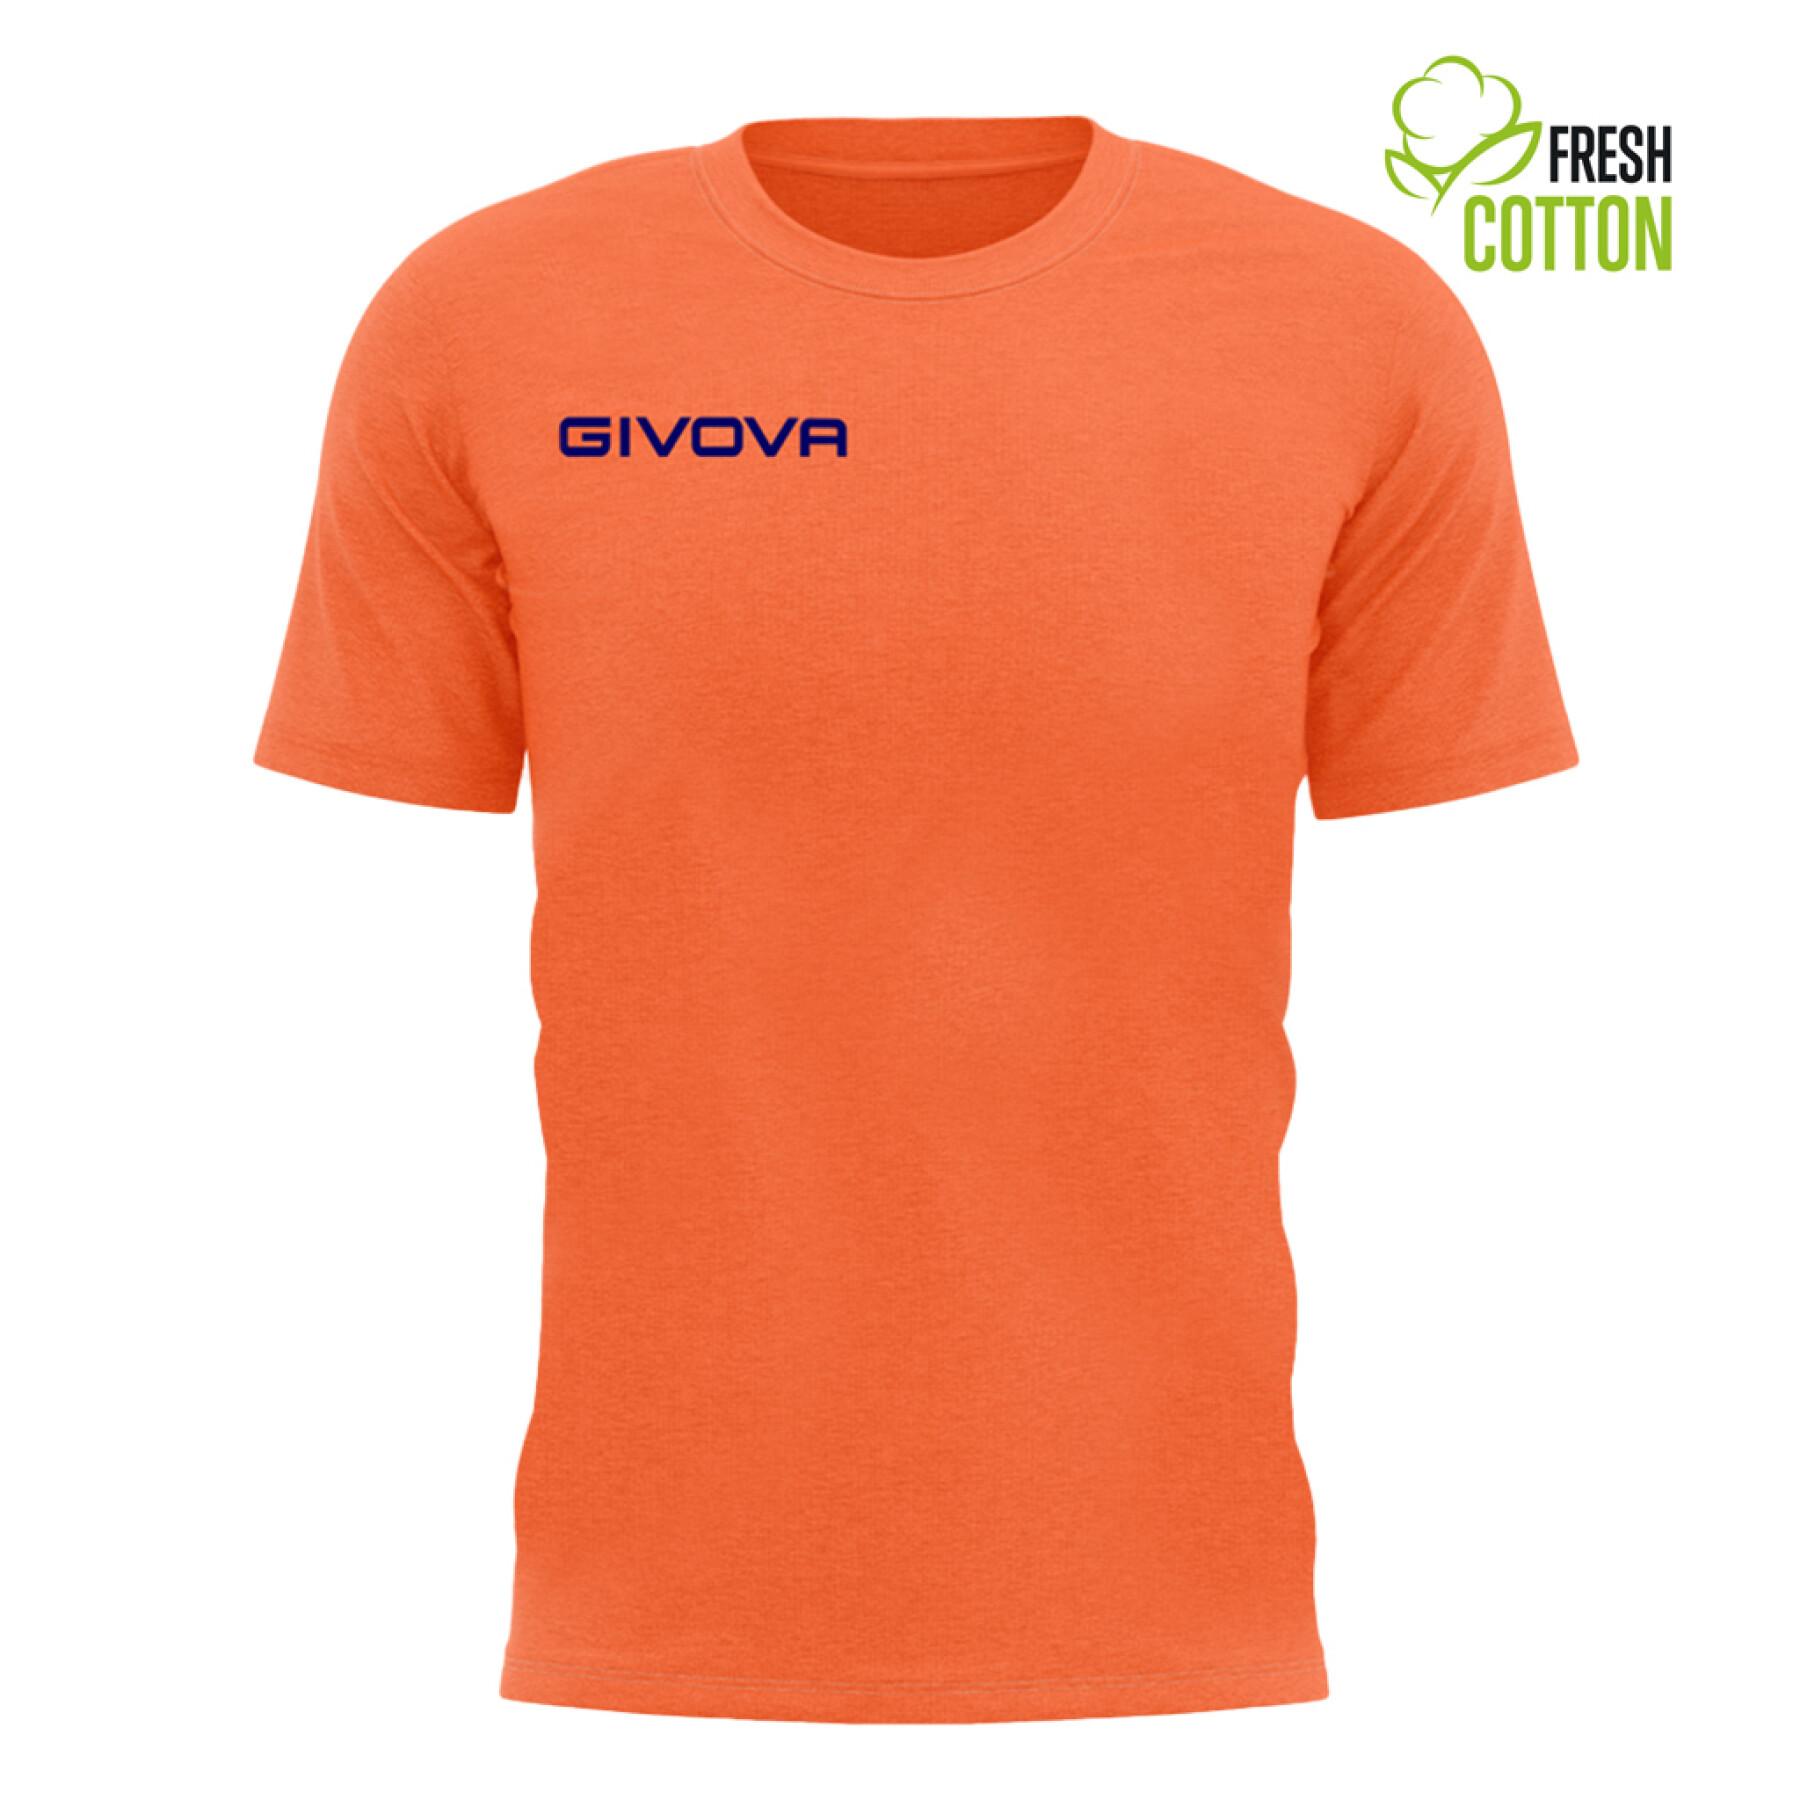 T-shirt cotton child Givova Fresh